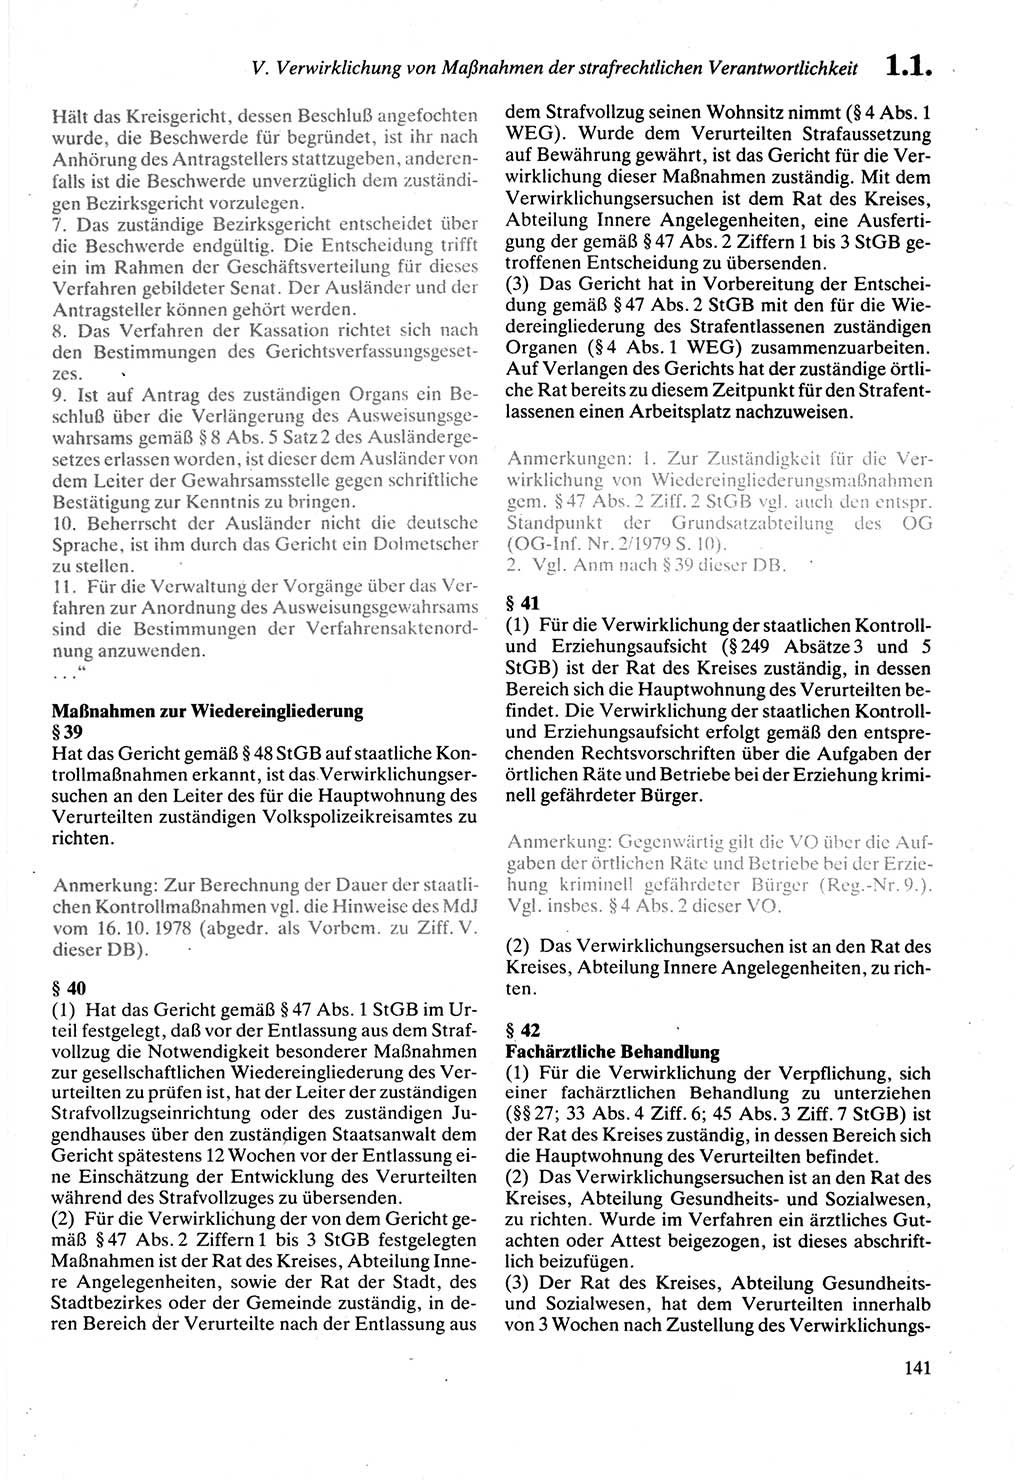 Strafprozeßordnung (StPO) der Deutschen Demokratischen Republik (DDR) sowie angrenzende Gesetze und Bestimmungen 1987, Seite 141 (StPO DDR Ges. Best. 1987, S. 141)